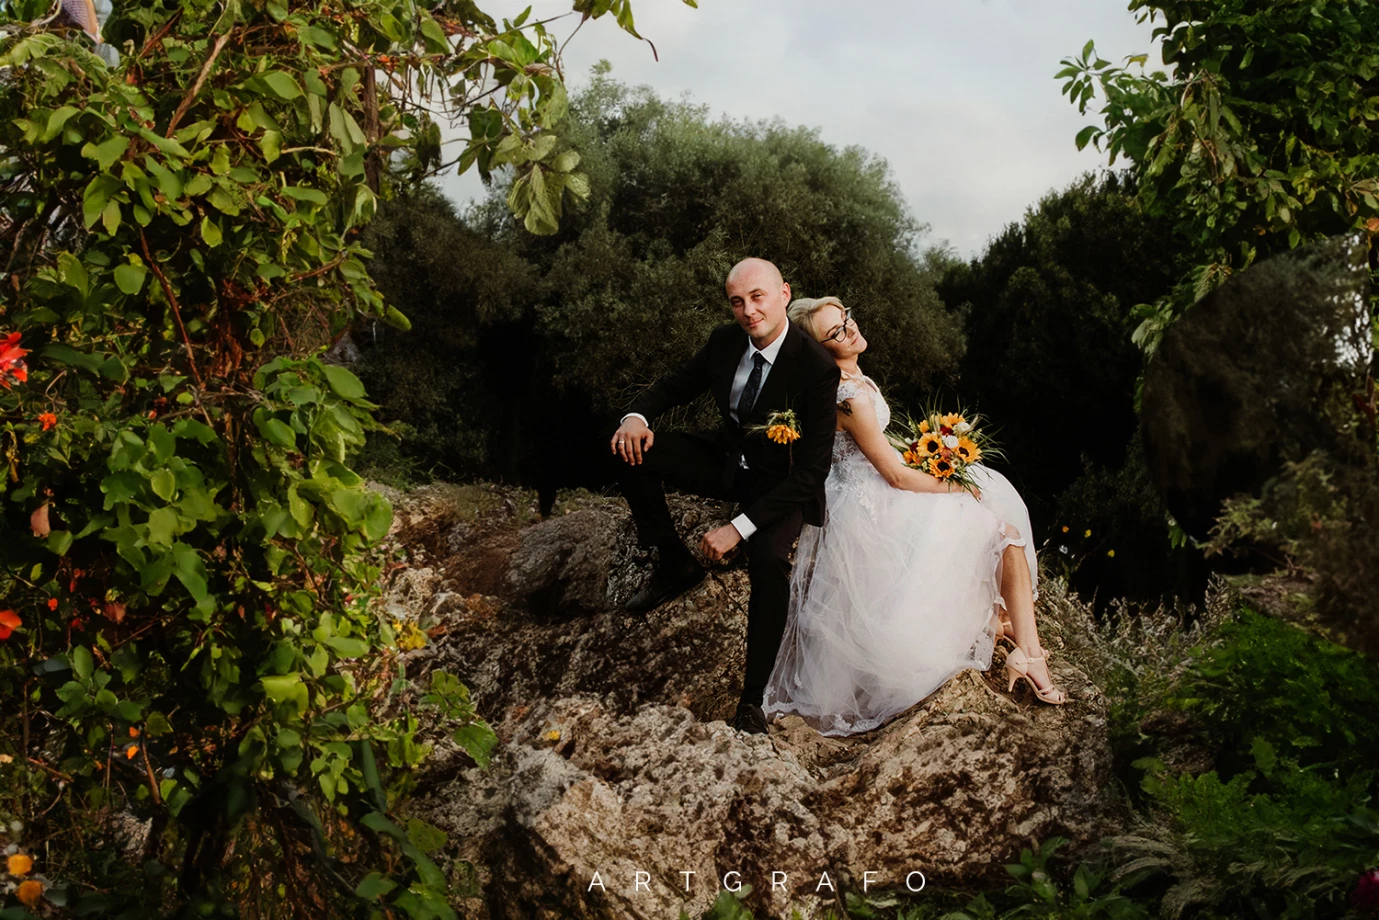 zdjęcia nowy-targ fotograf artgrafo-wedding portfolio zdjecia slubne inspiracje wesele plener slubny sesja slubna